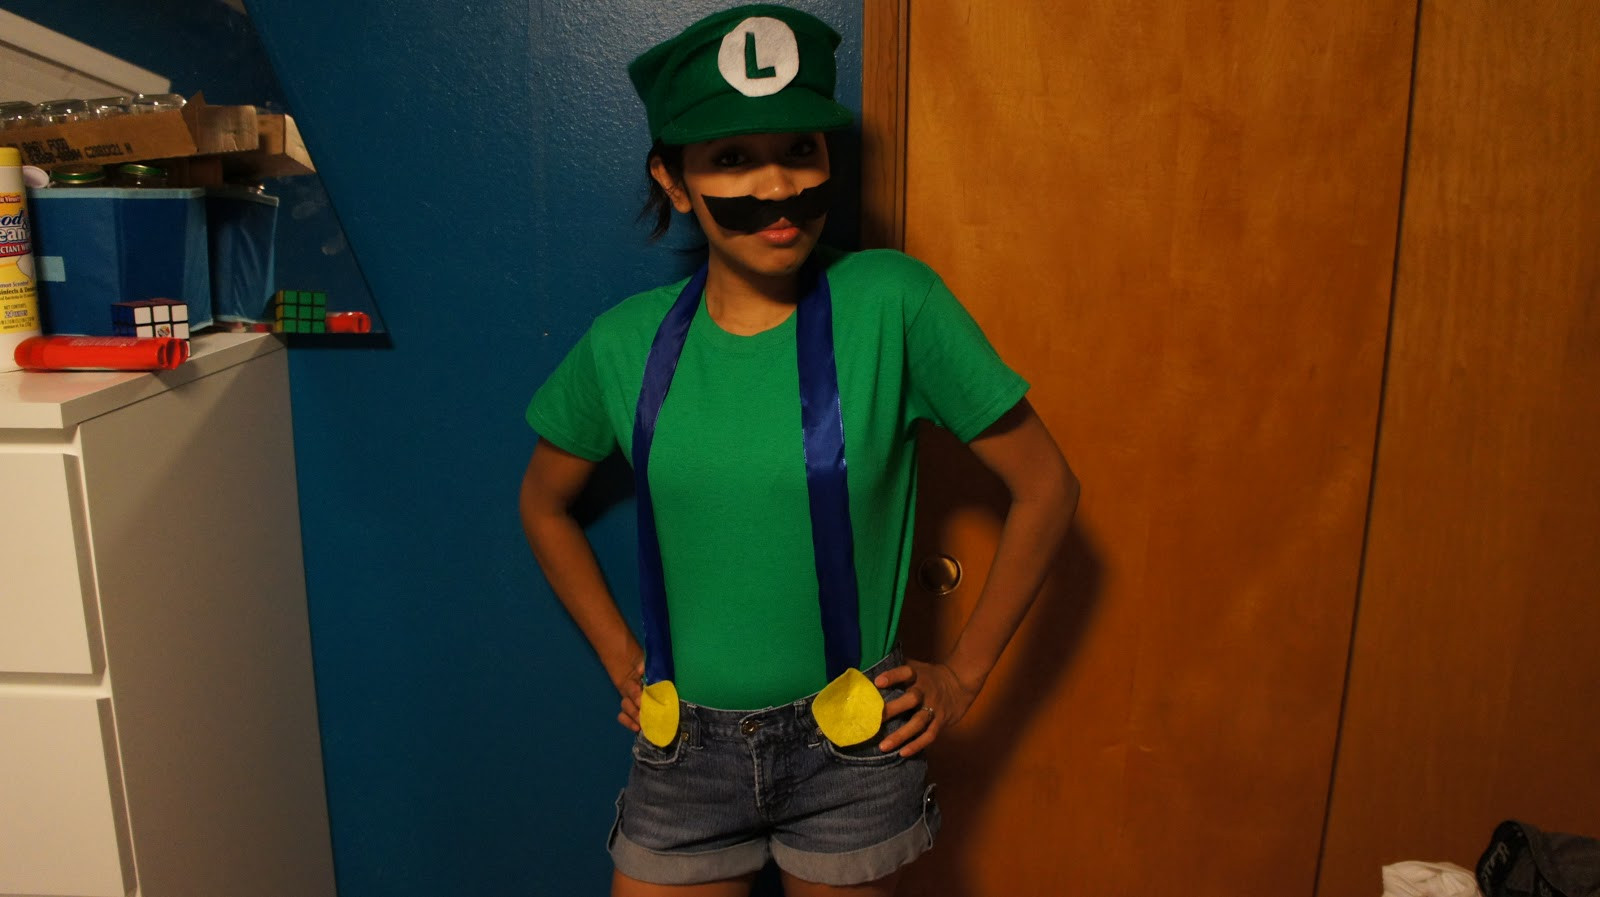 Best ideas about Luigi Costume DIY
. Save or Pin DIY Mario & Luigi Costumes Now.